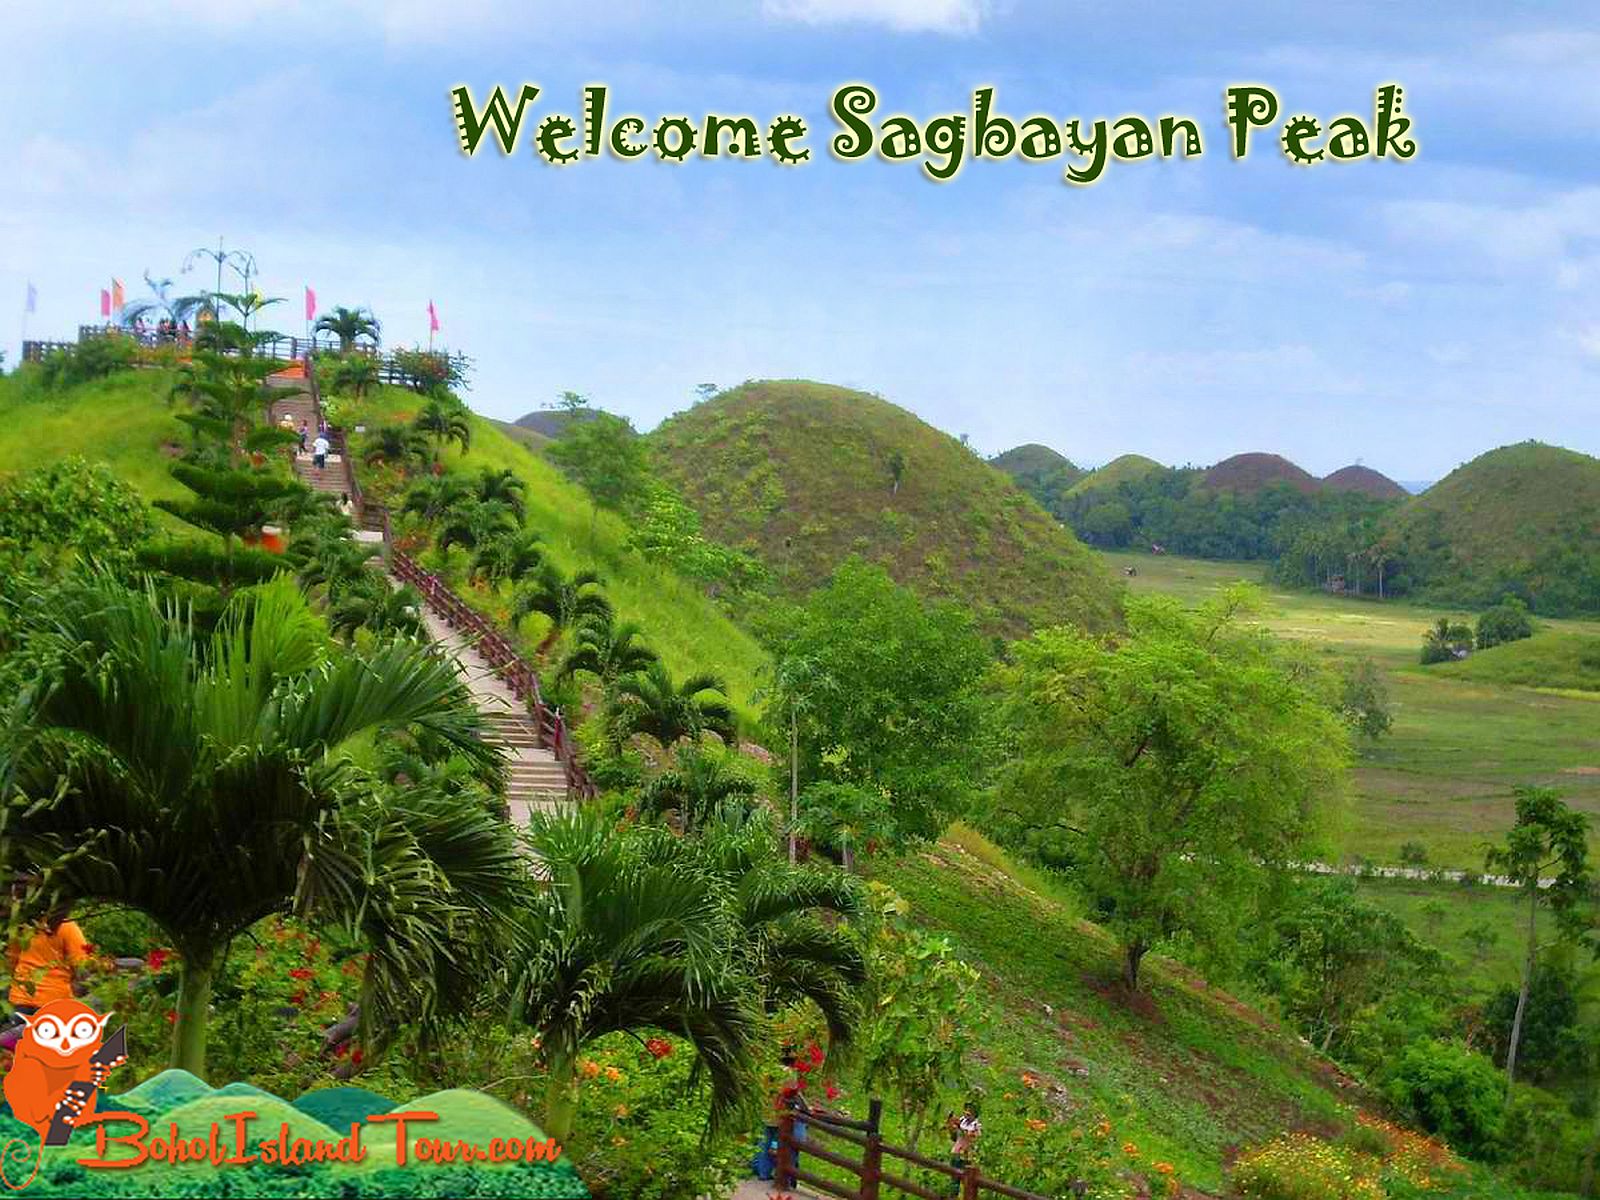 PHILIPPINEN REISEN - ORTE - BOHOL - Touristische Ortsbeschreibung für Sagbayan